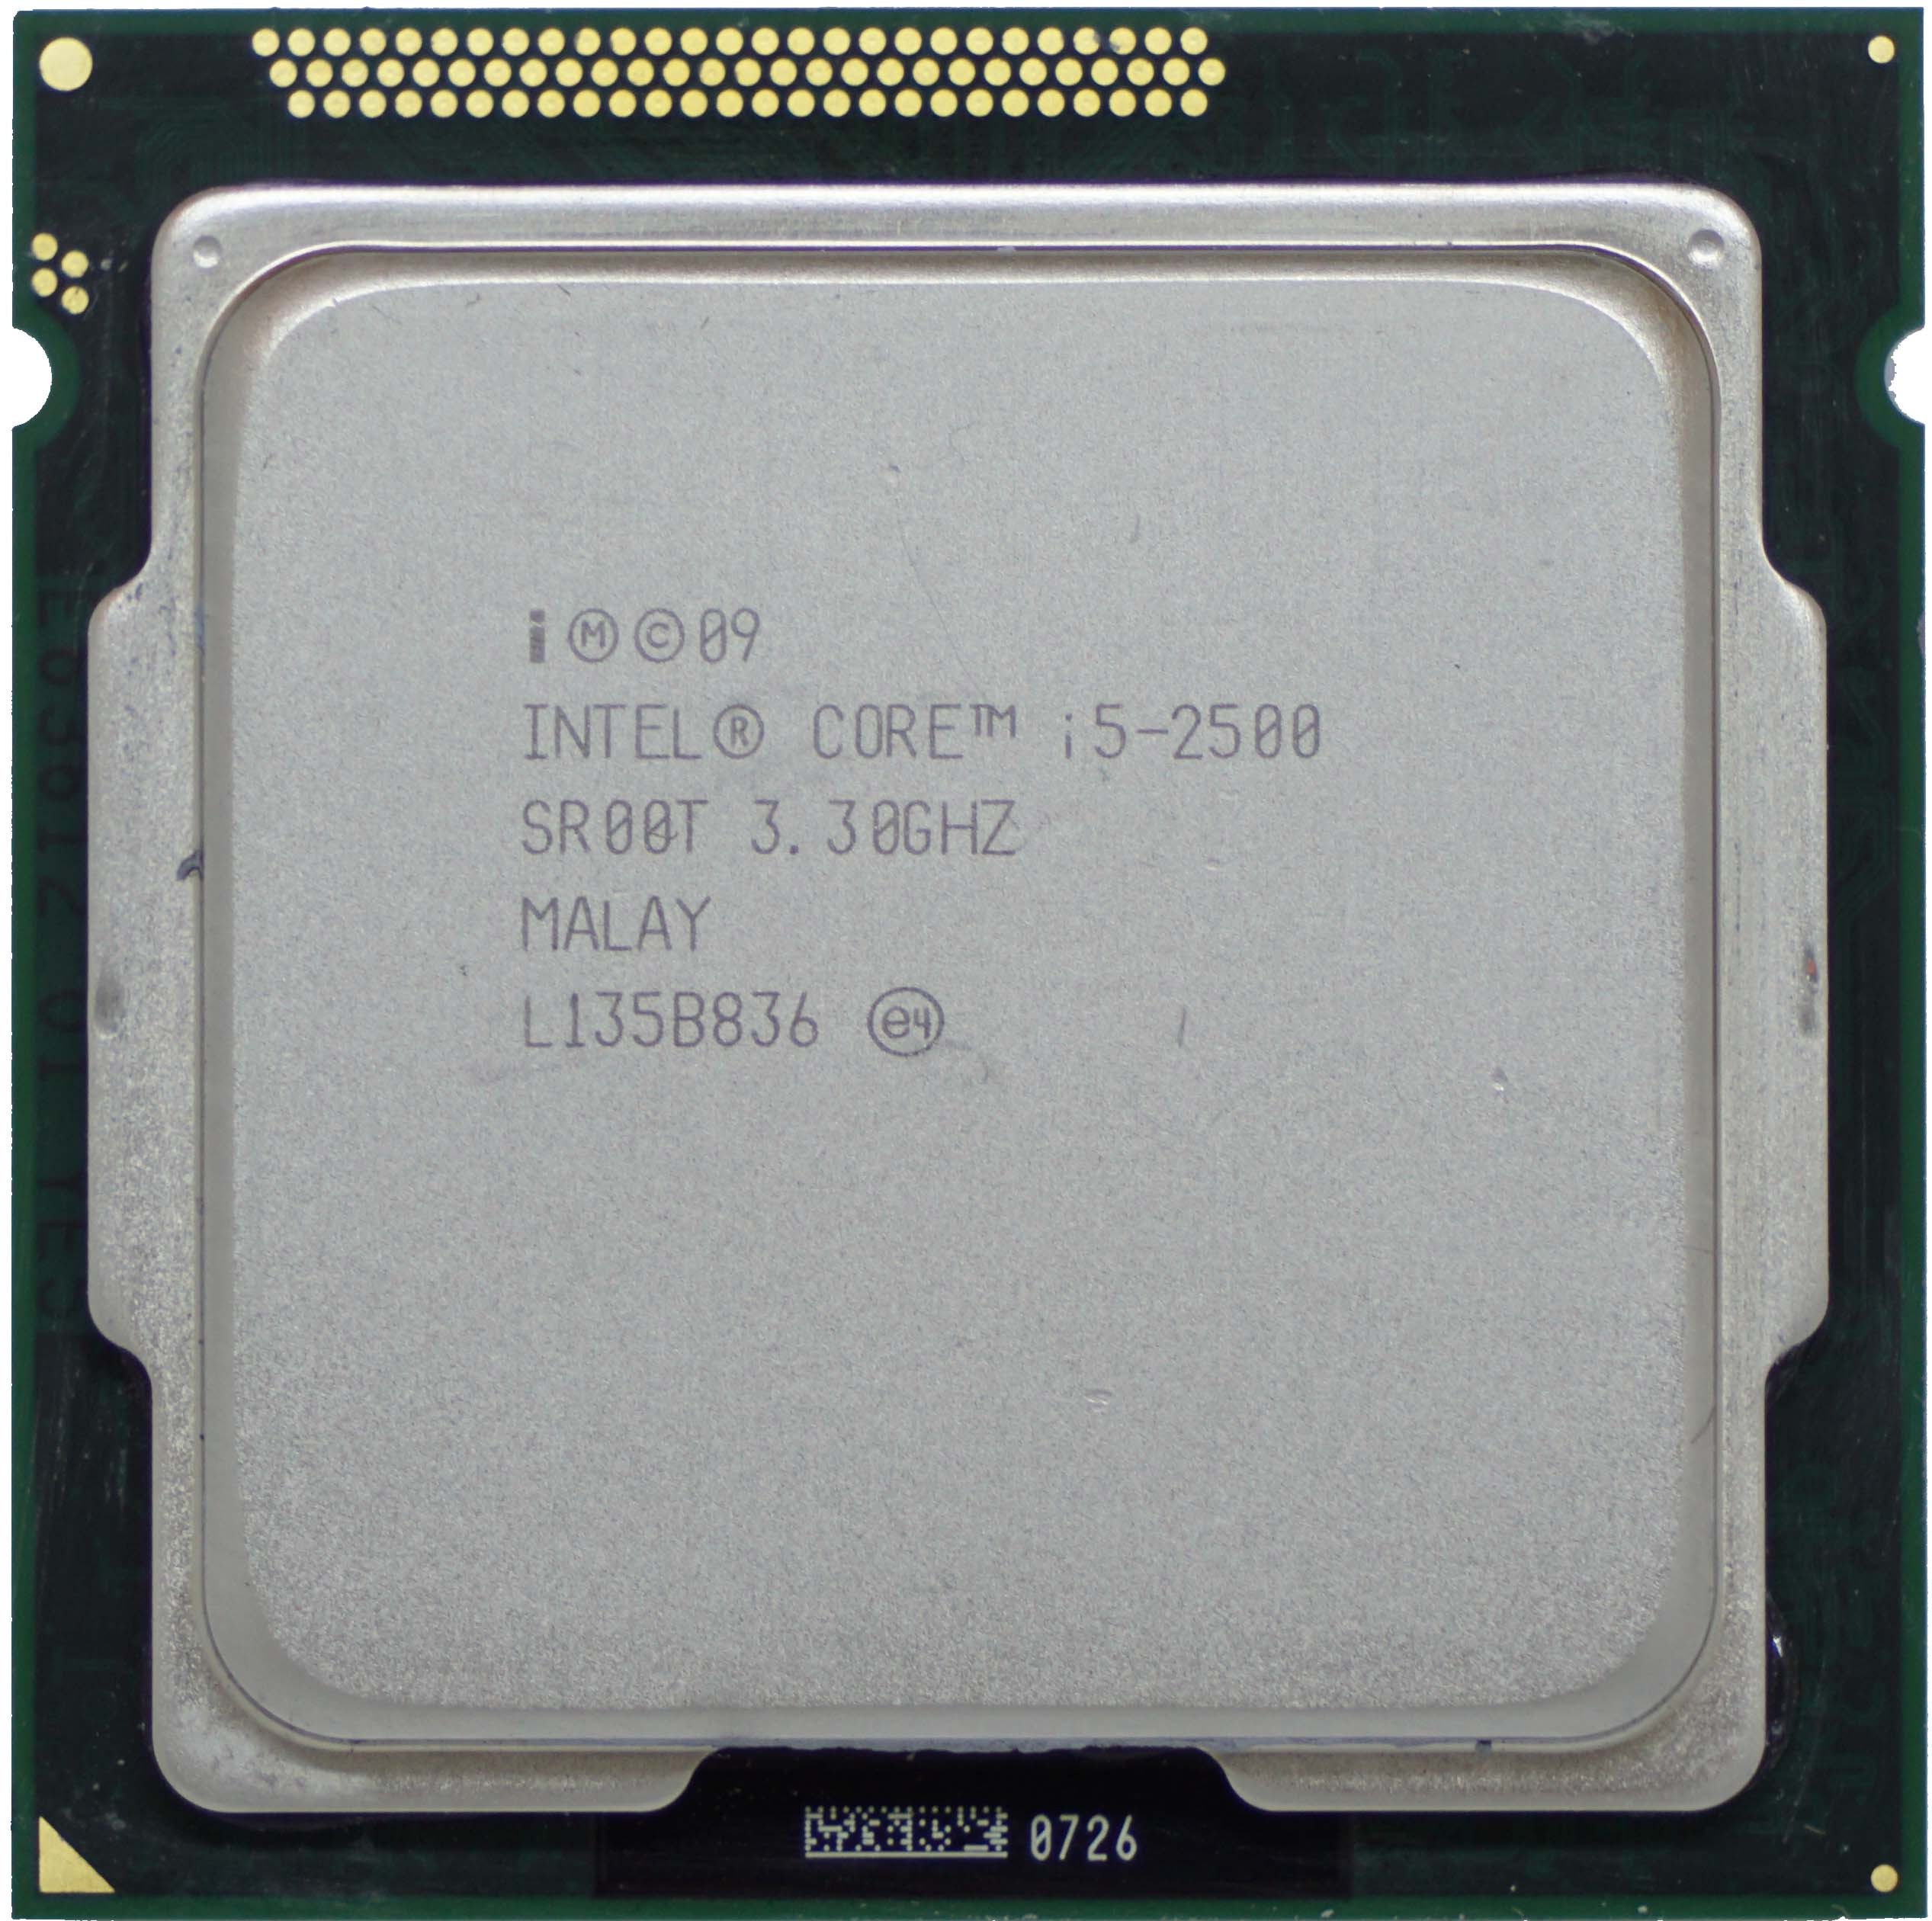 Intel Core i5-2400 Processor 3.1GHz 5.0GT/s 6MB LGA 1155 CPU Renewed CM8062300834106 OEM 